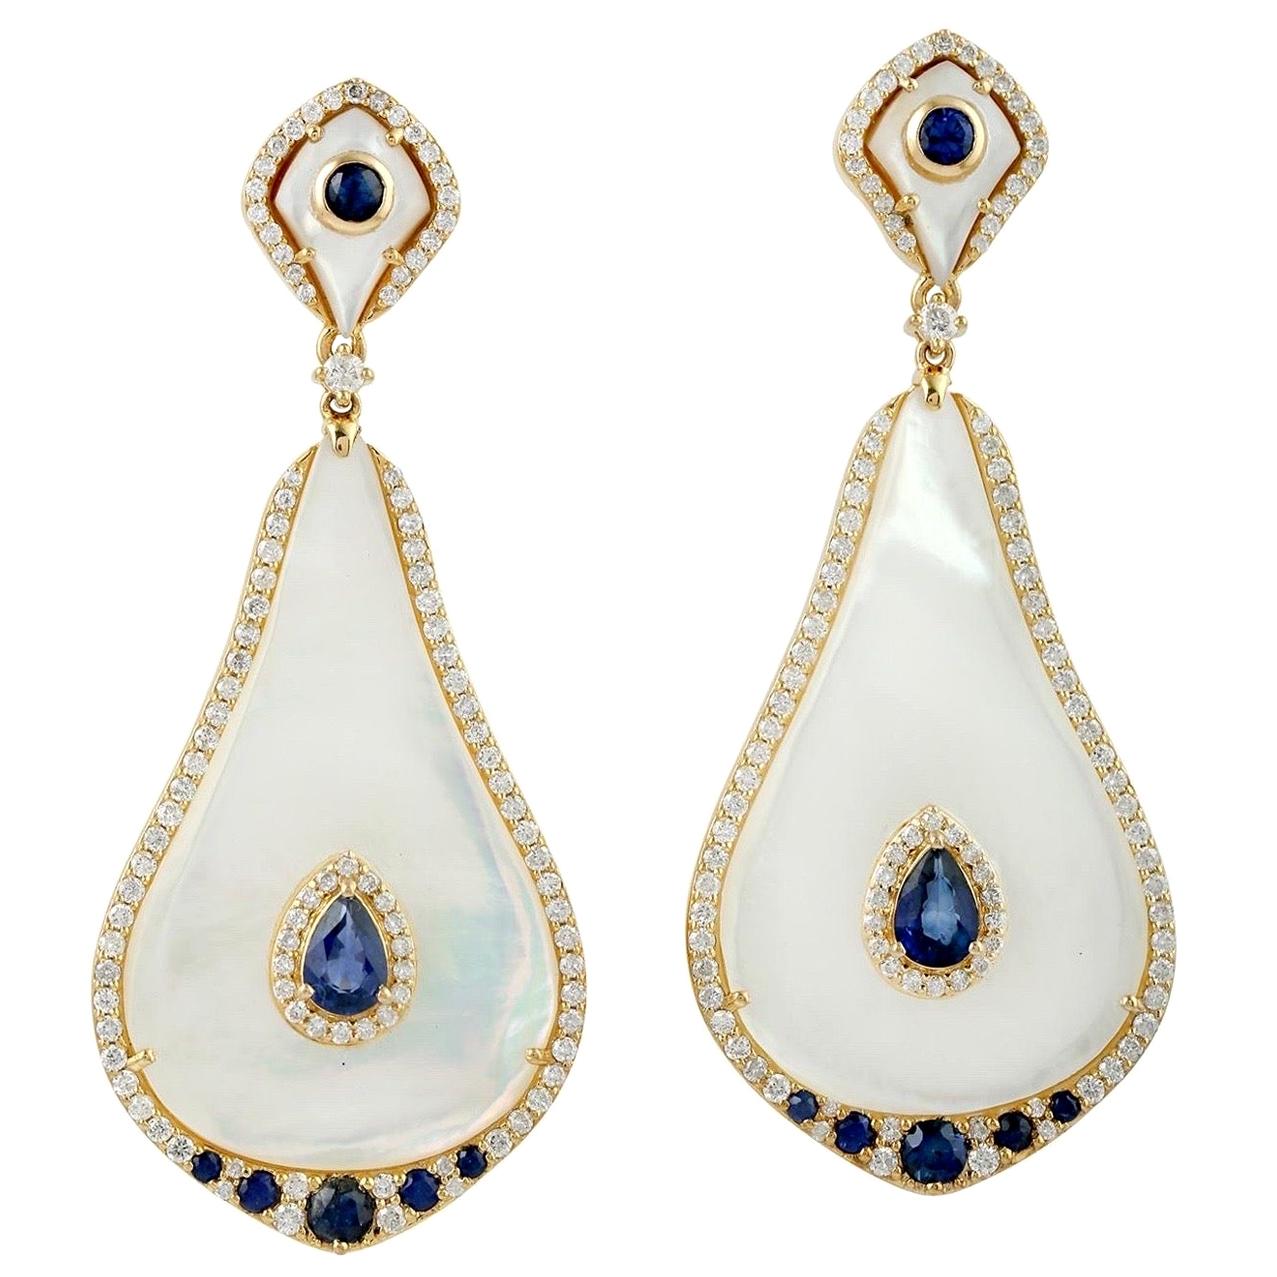 Boucles d'oreilles en or 18 carats avec saphir bleu et nacre et diamants